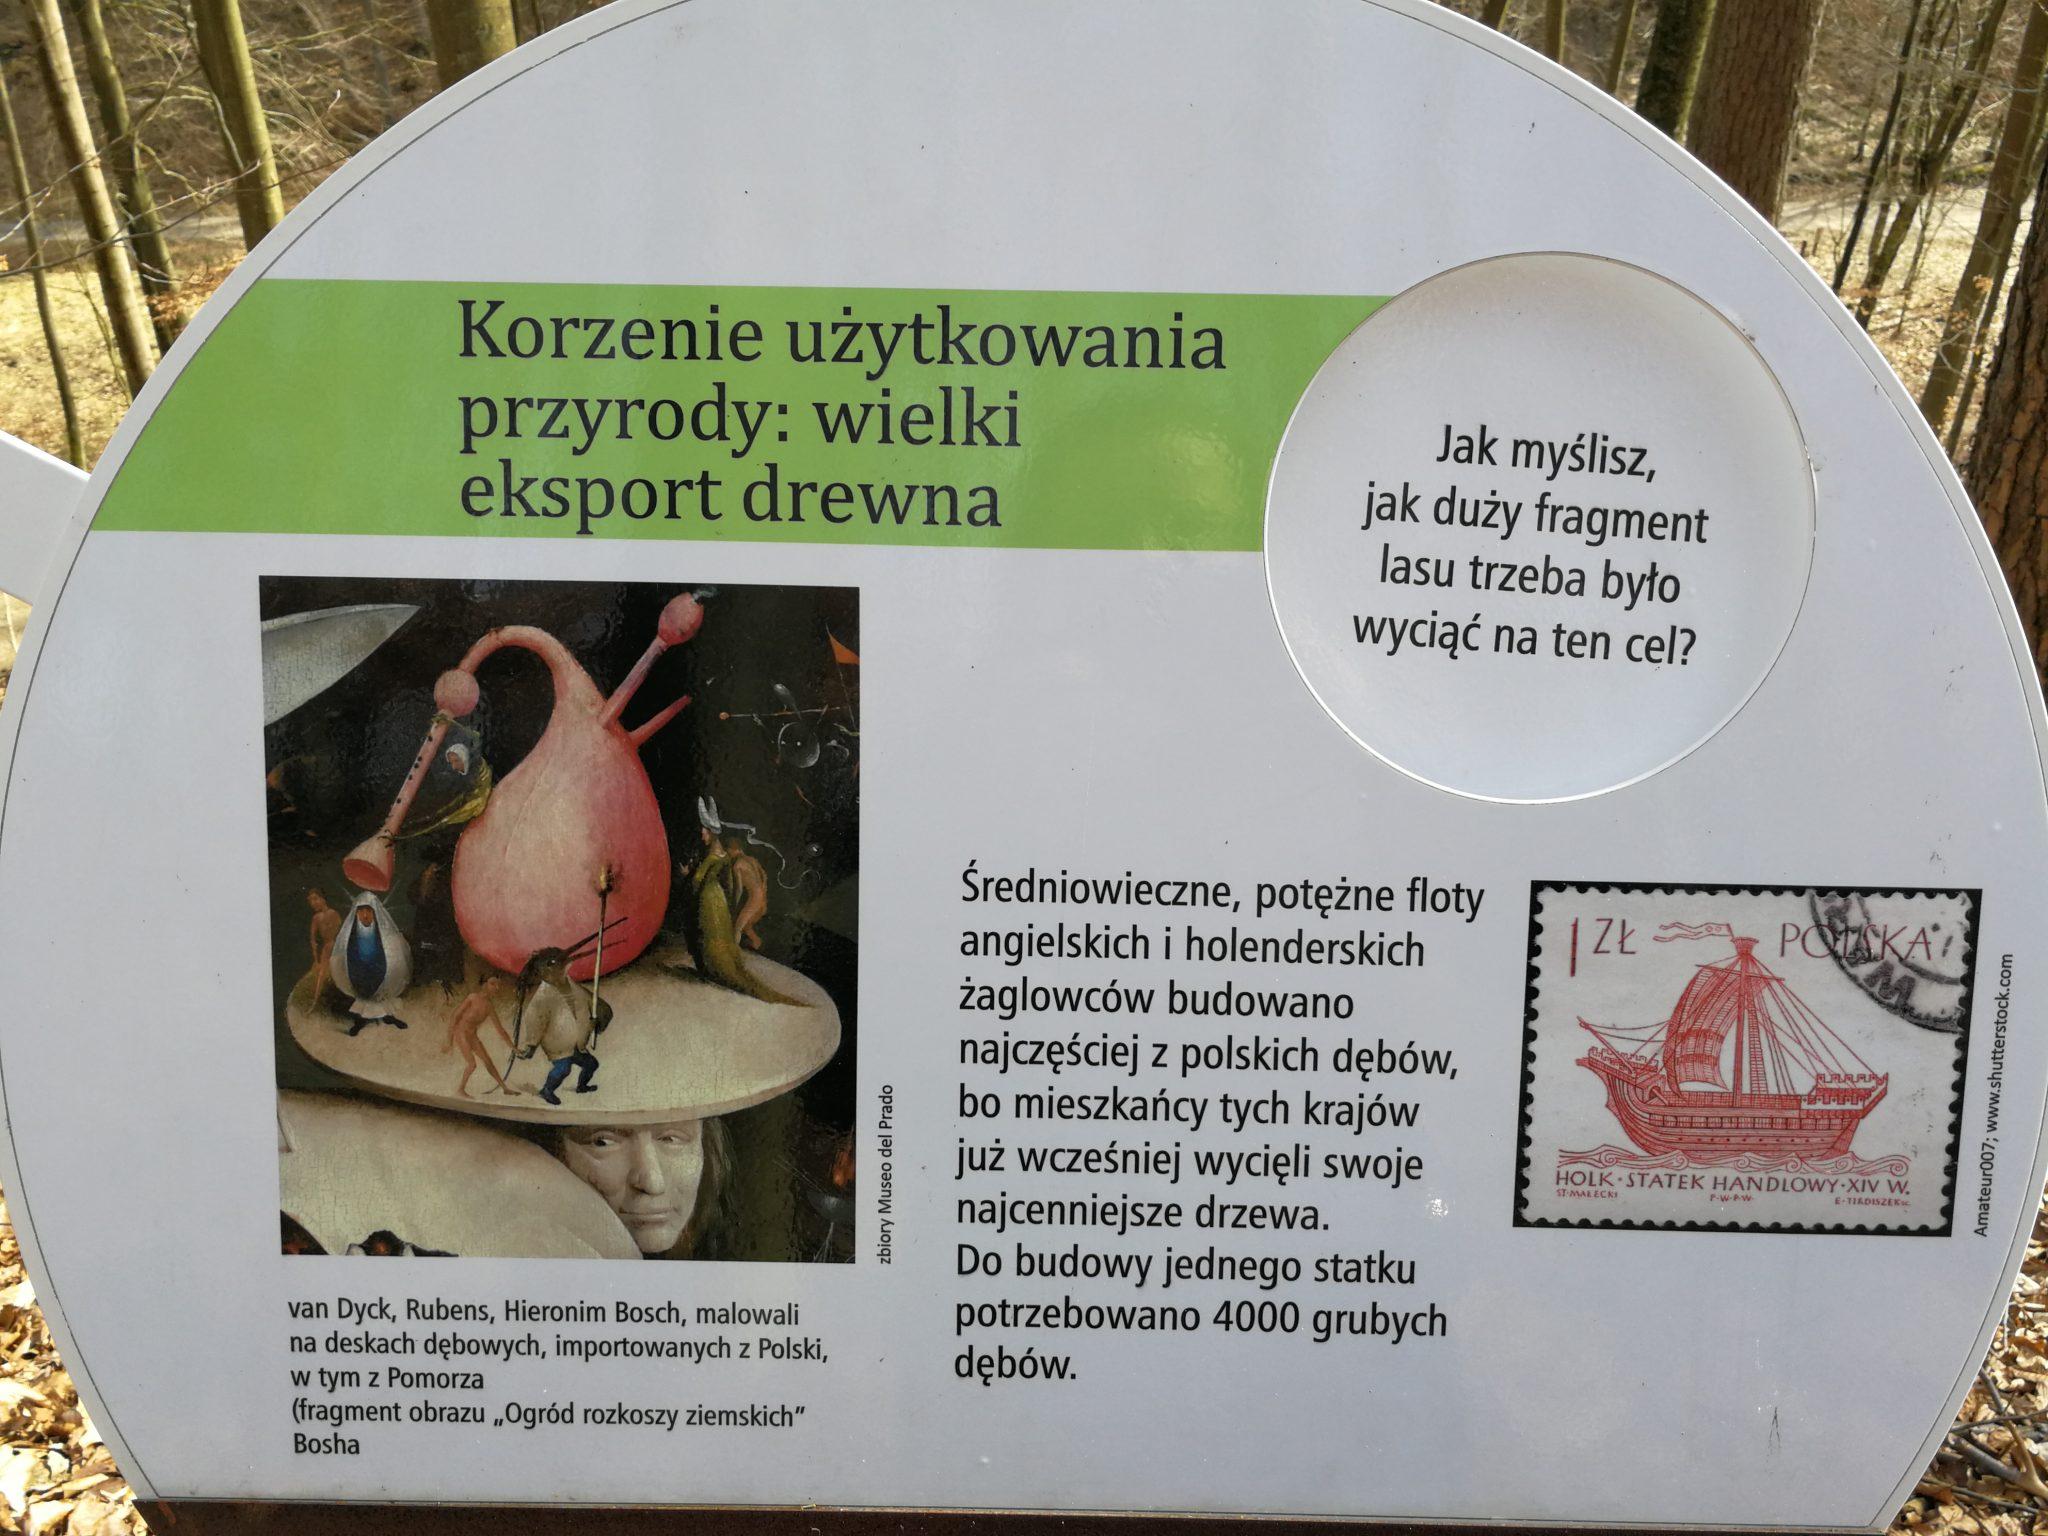 Leśny-Ogród-Botaniczny-w-Marszewie-Rubens-malował-na-polskich-deskach-dębowych